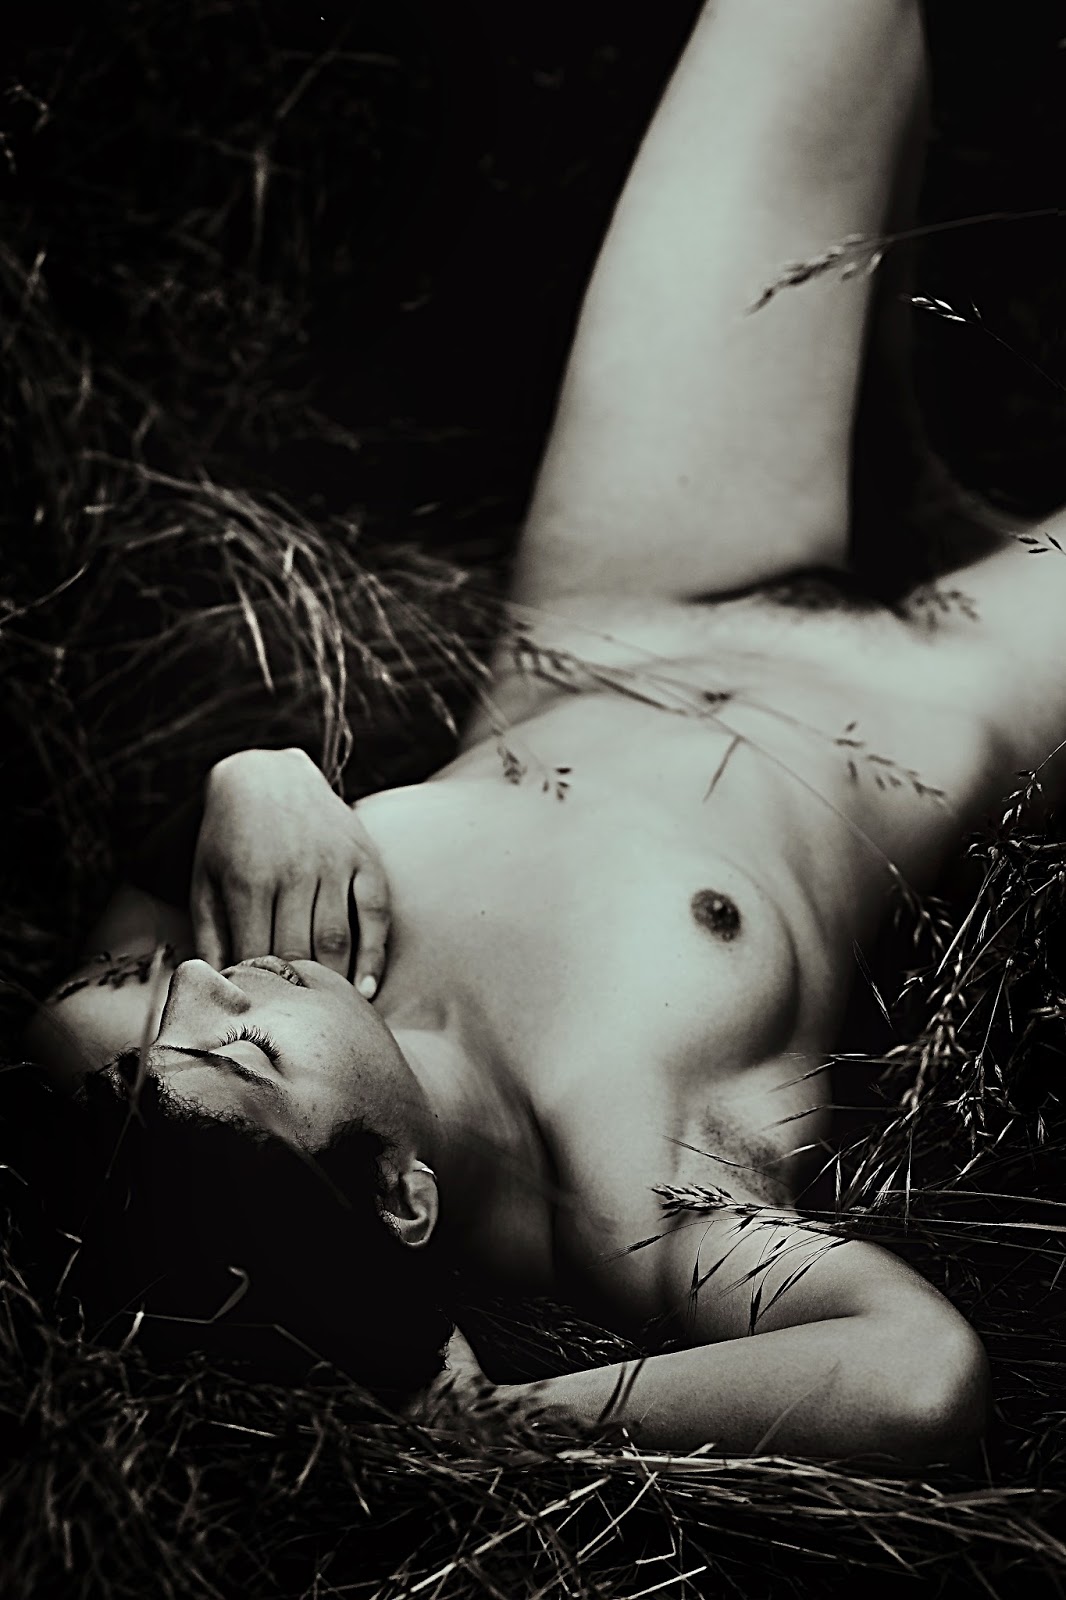 sophie groult – Artemis / Fine art contemporain photographie